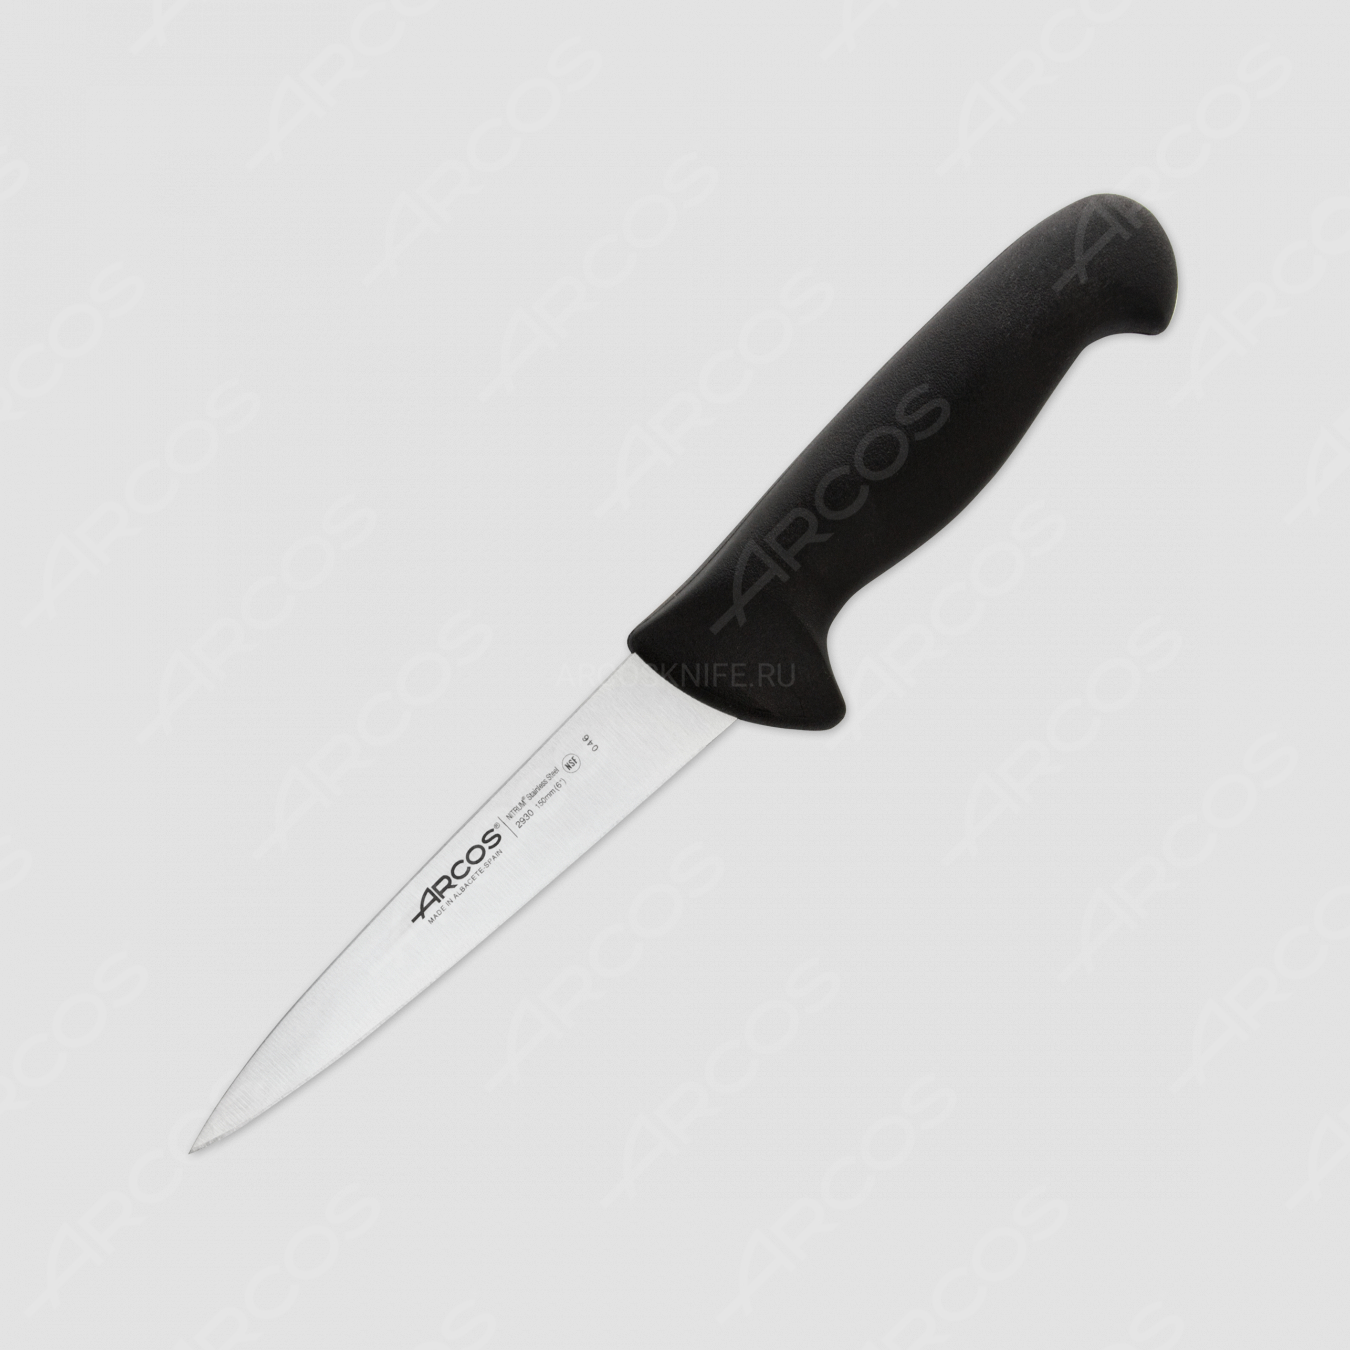 Нож кухонный для мяса 15 см, рукоять черная, серия 2900, ARCOS, Испания